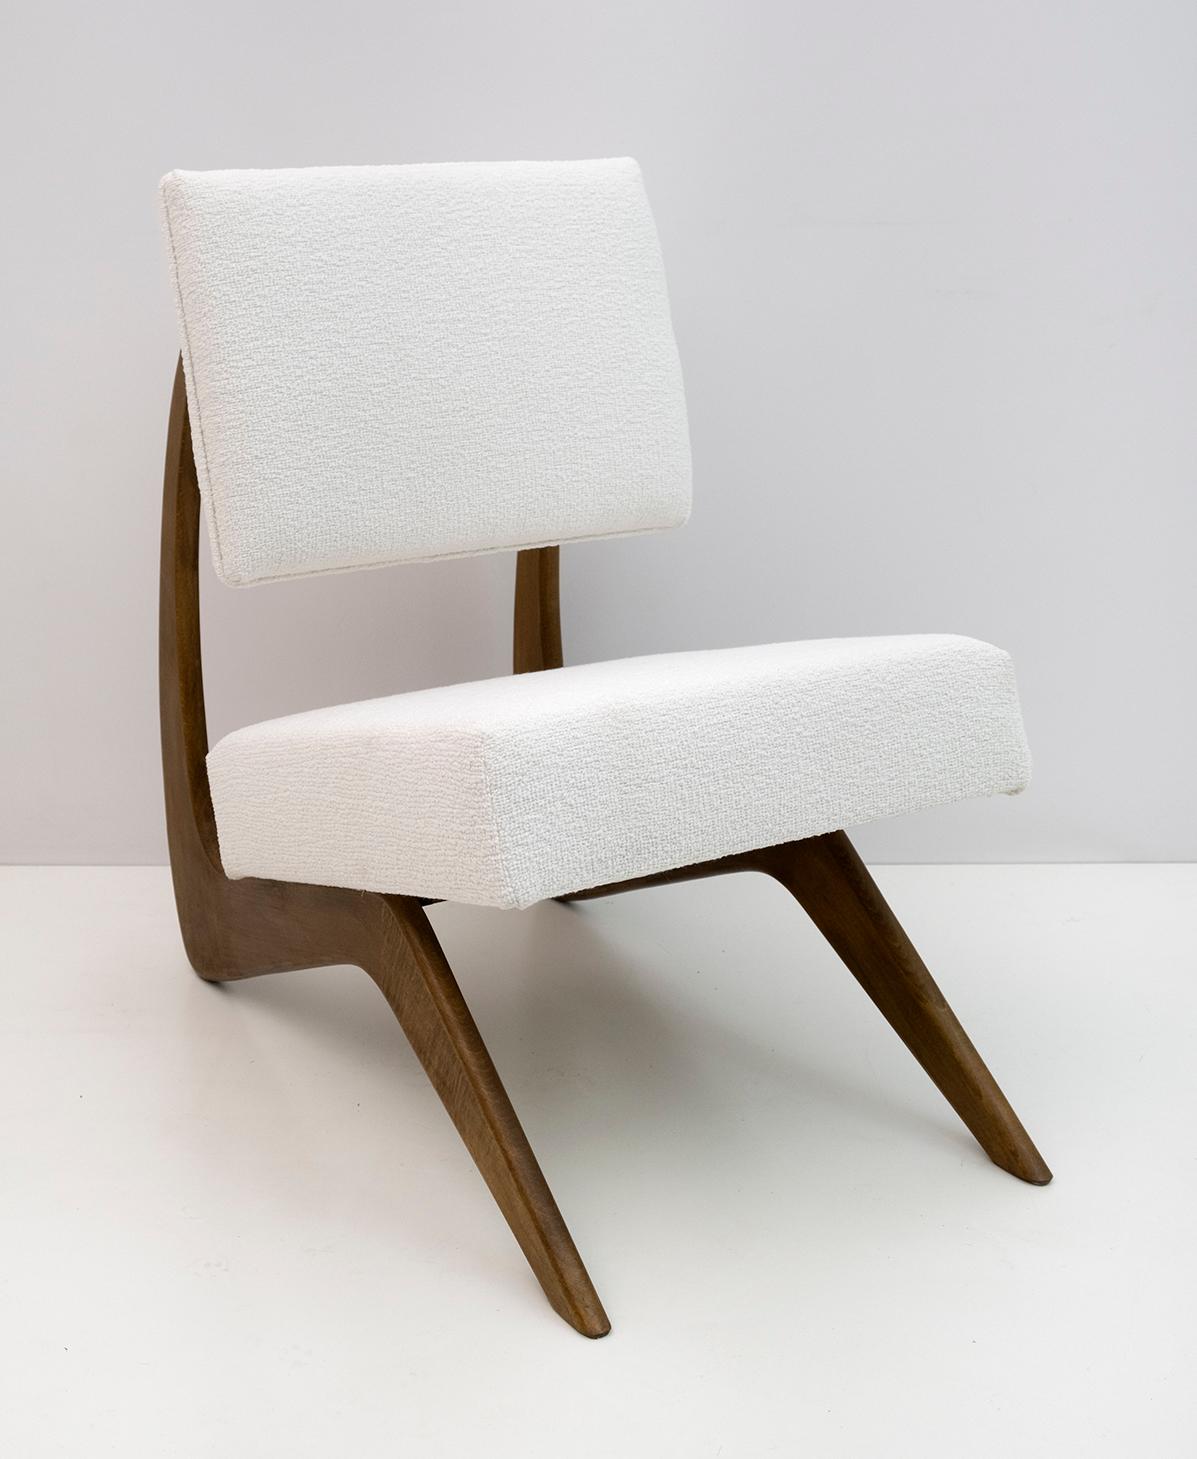 Sessel, entworfen von dem amerikanischen Designer Adrian Pearsall. Das Gestell dieses Cocktailsessels ist aus Nussbaumholz in einer schönen geschwungenen Form gefertigt und mit weißem Chenille-Stoff gepolstert. Der Sessel ist restauriert und neu